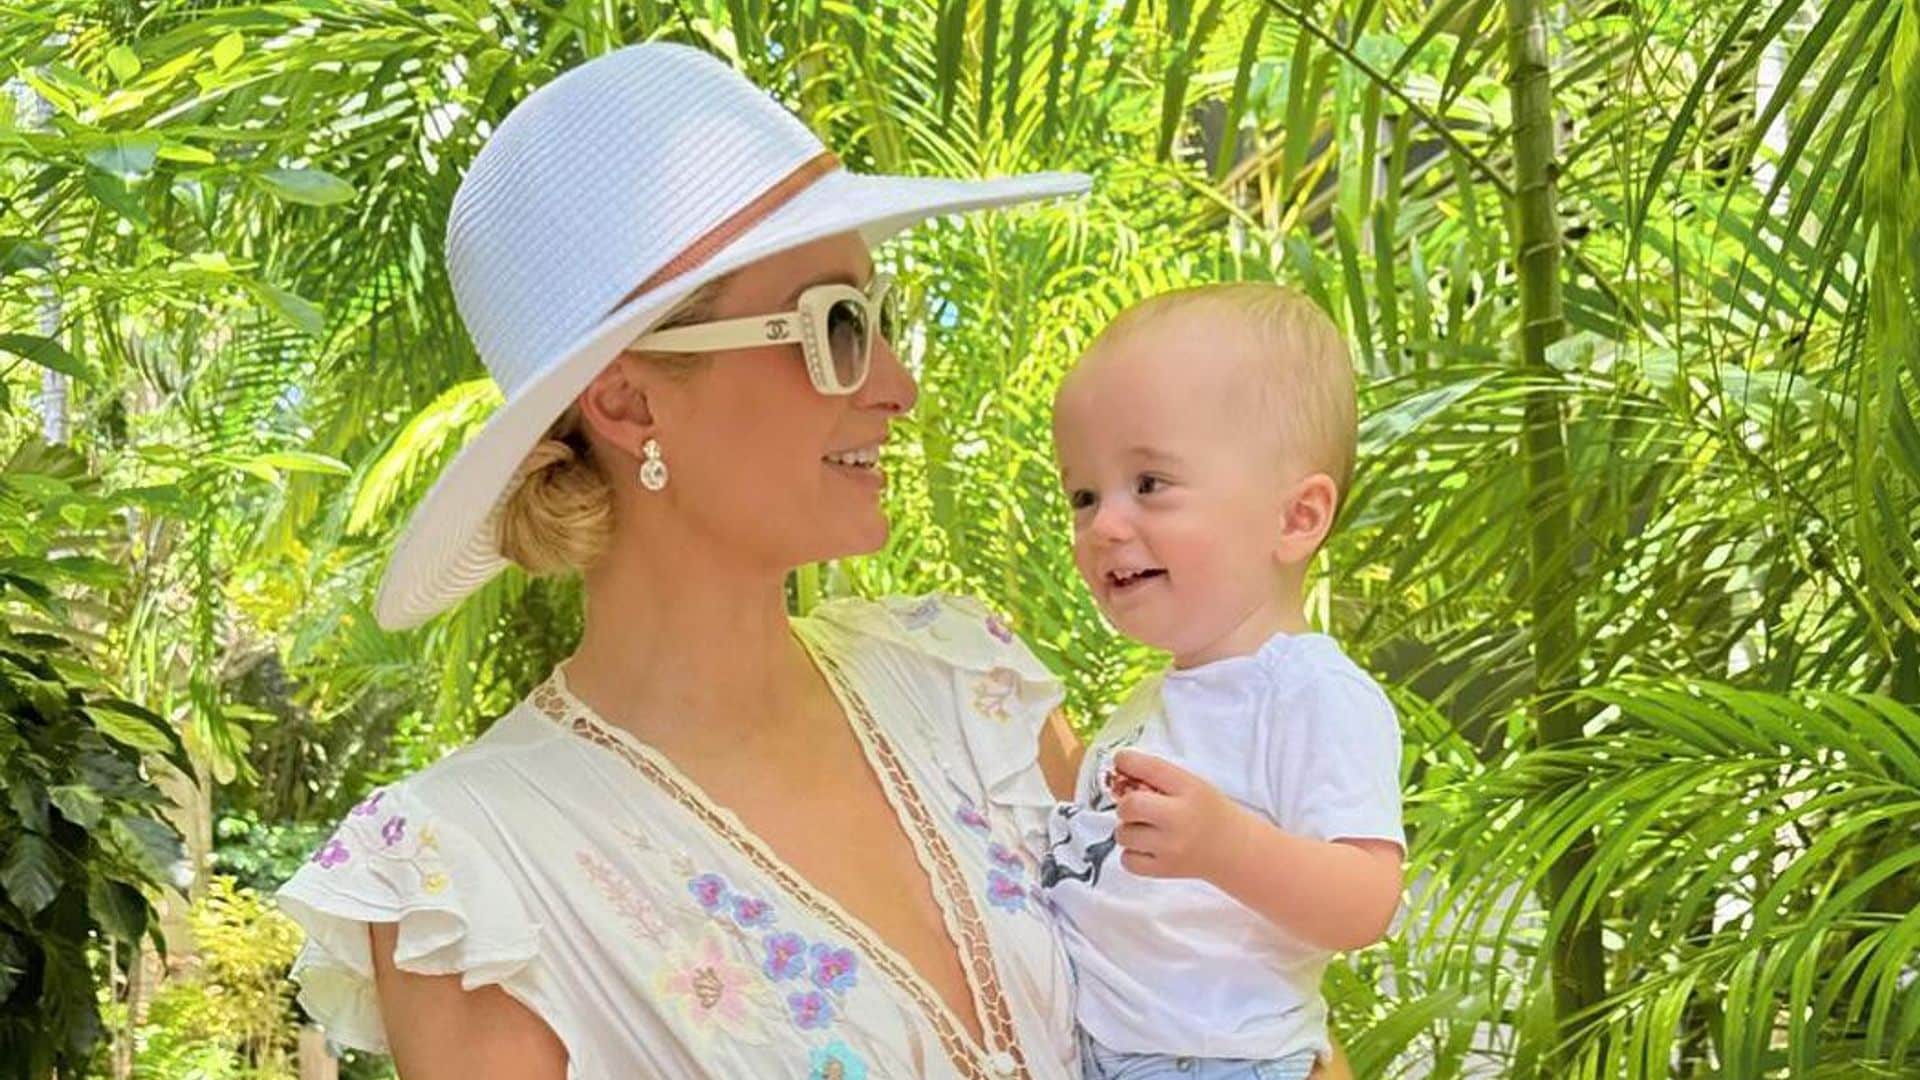 Paris Hilton y Carter Reum responden a la ausencia de su hija, London, en las fotos familiares